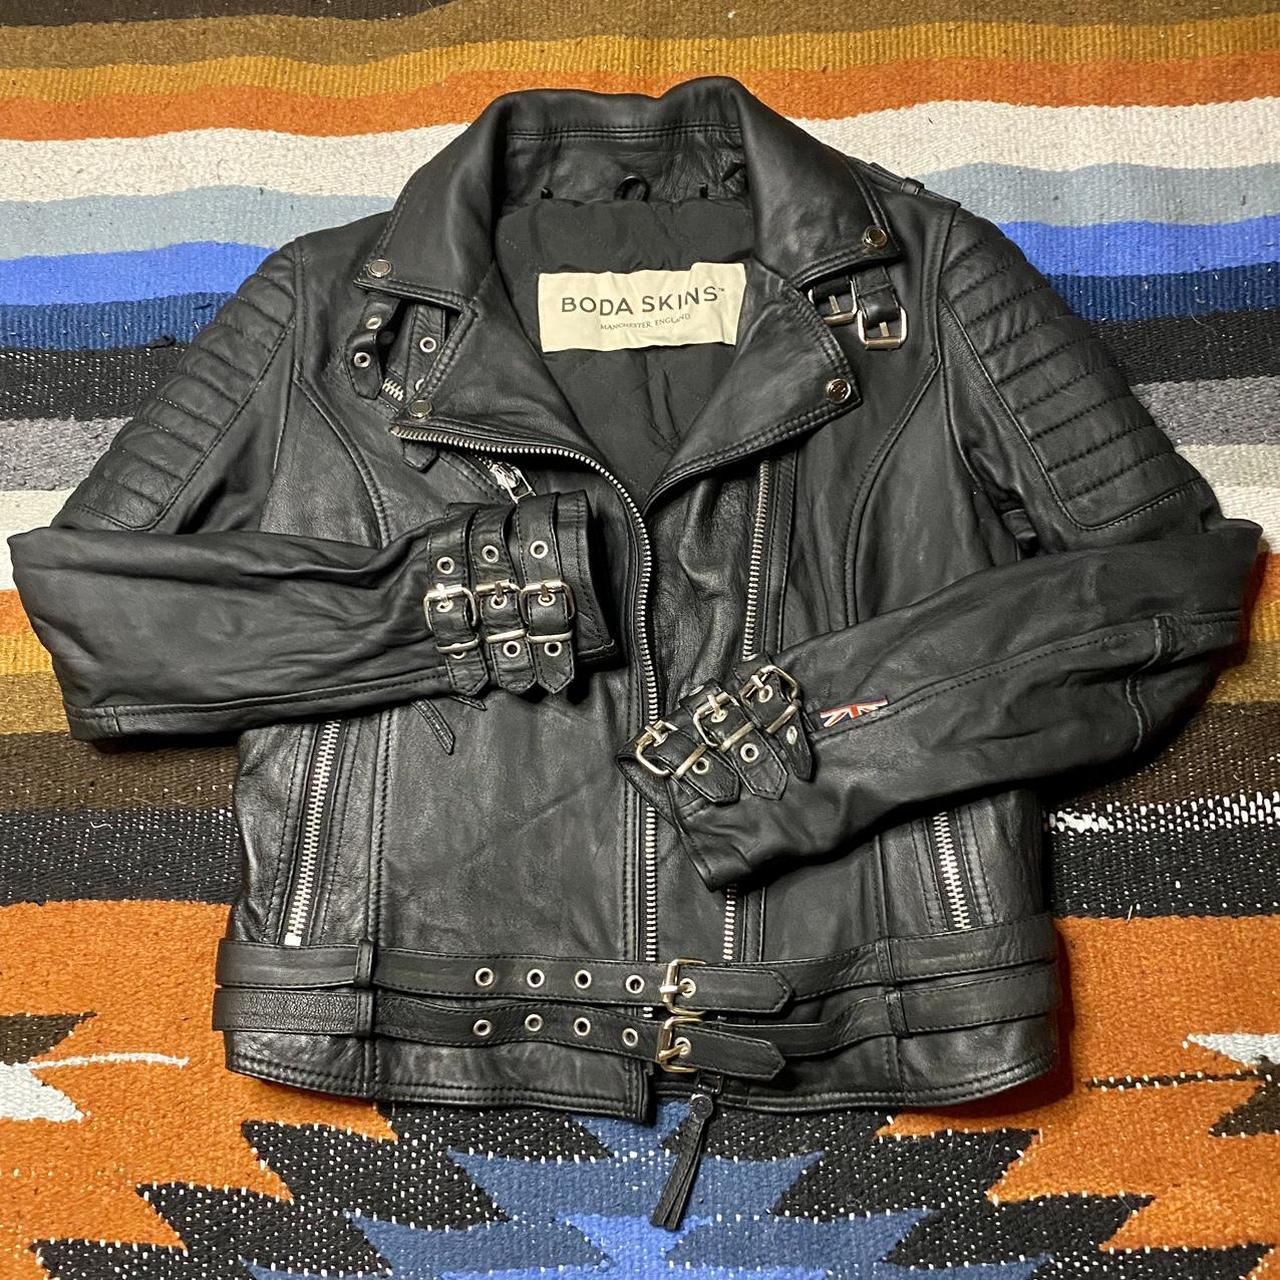 Boda Skins ‘JAWS 3.0’ women’s leather punk / biker... - Depop